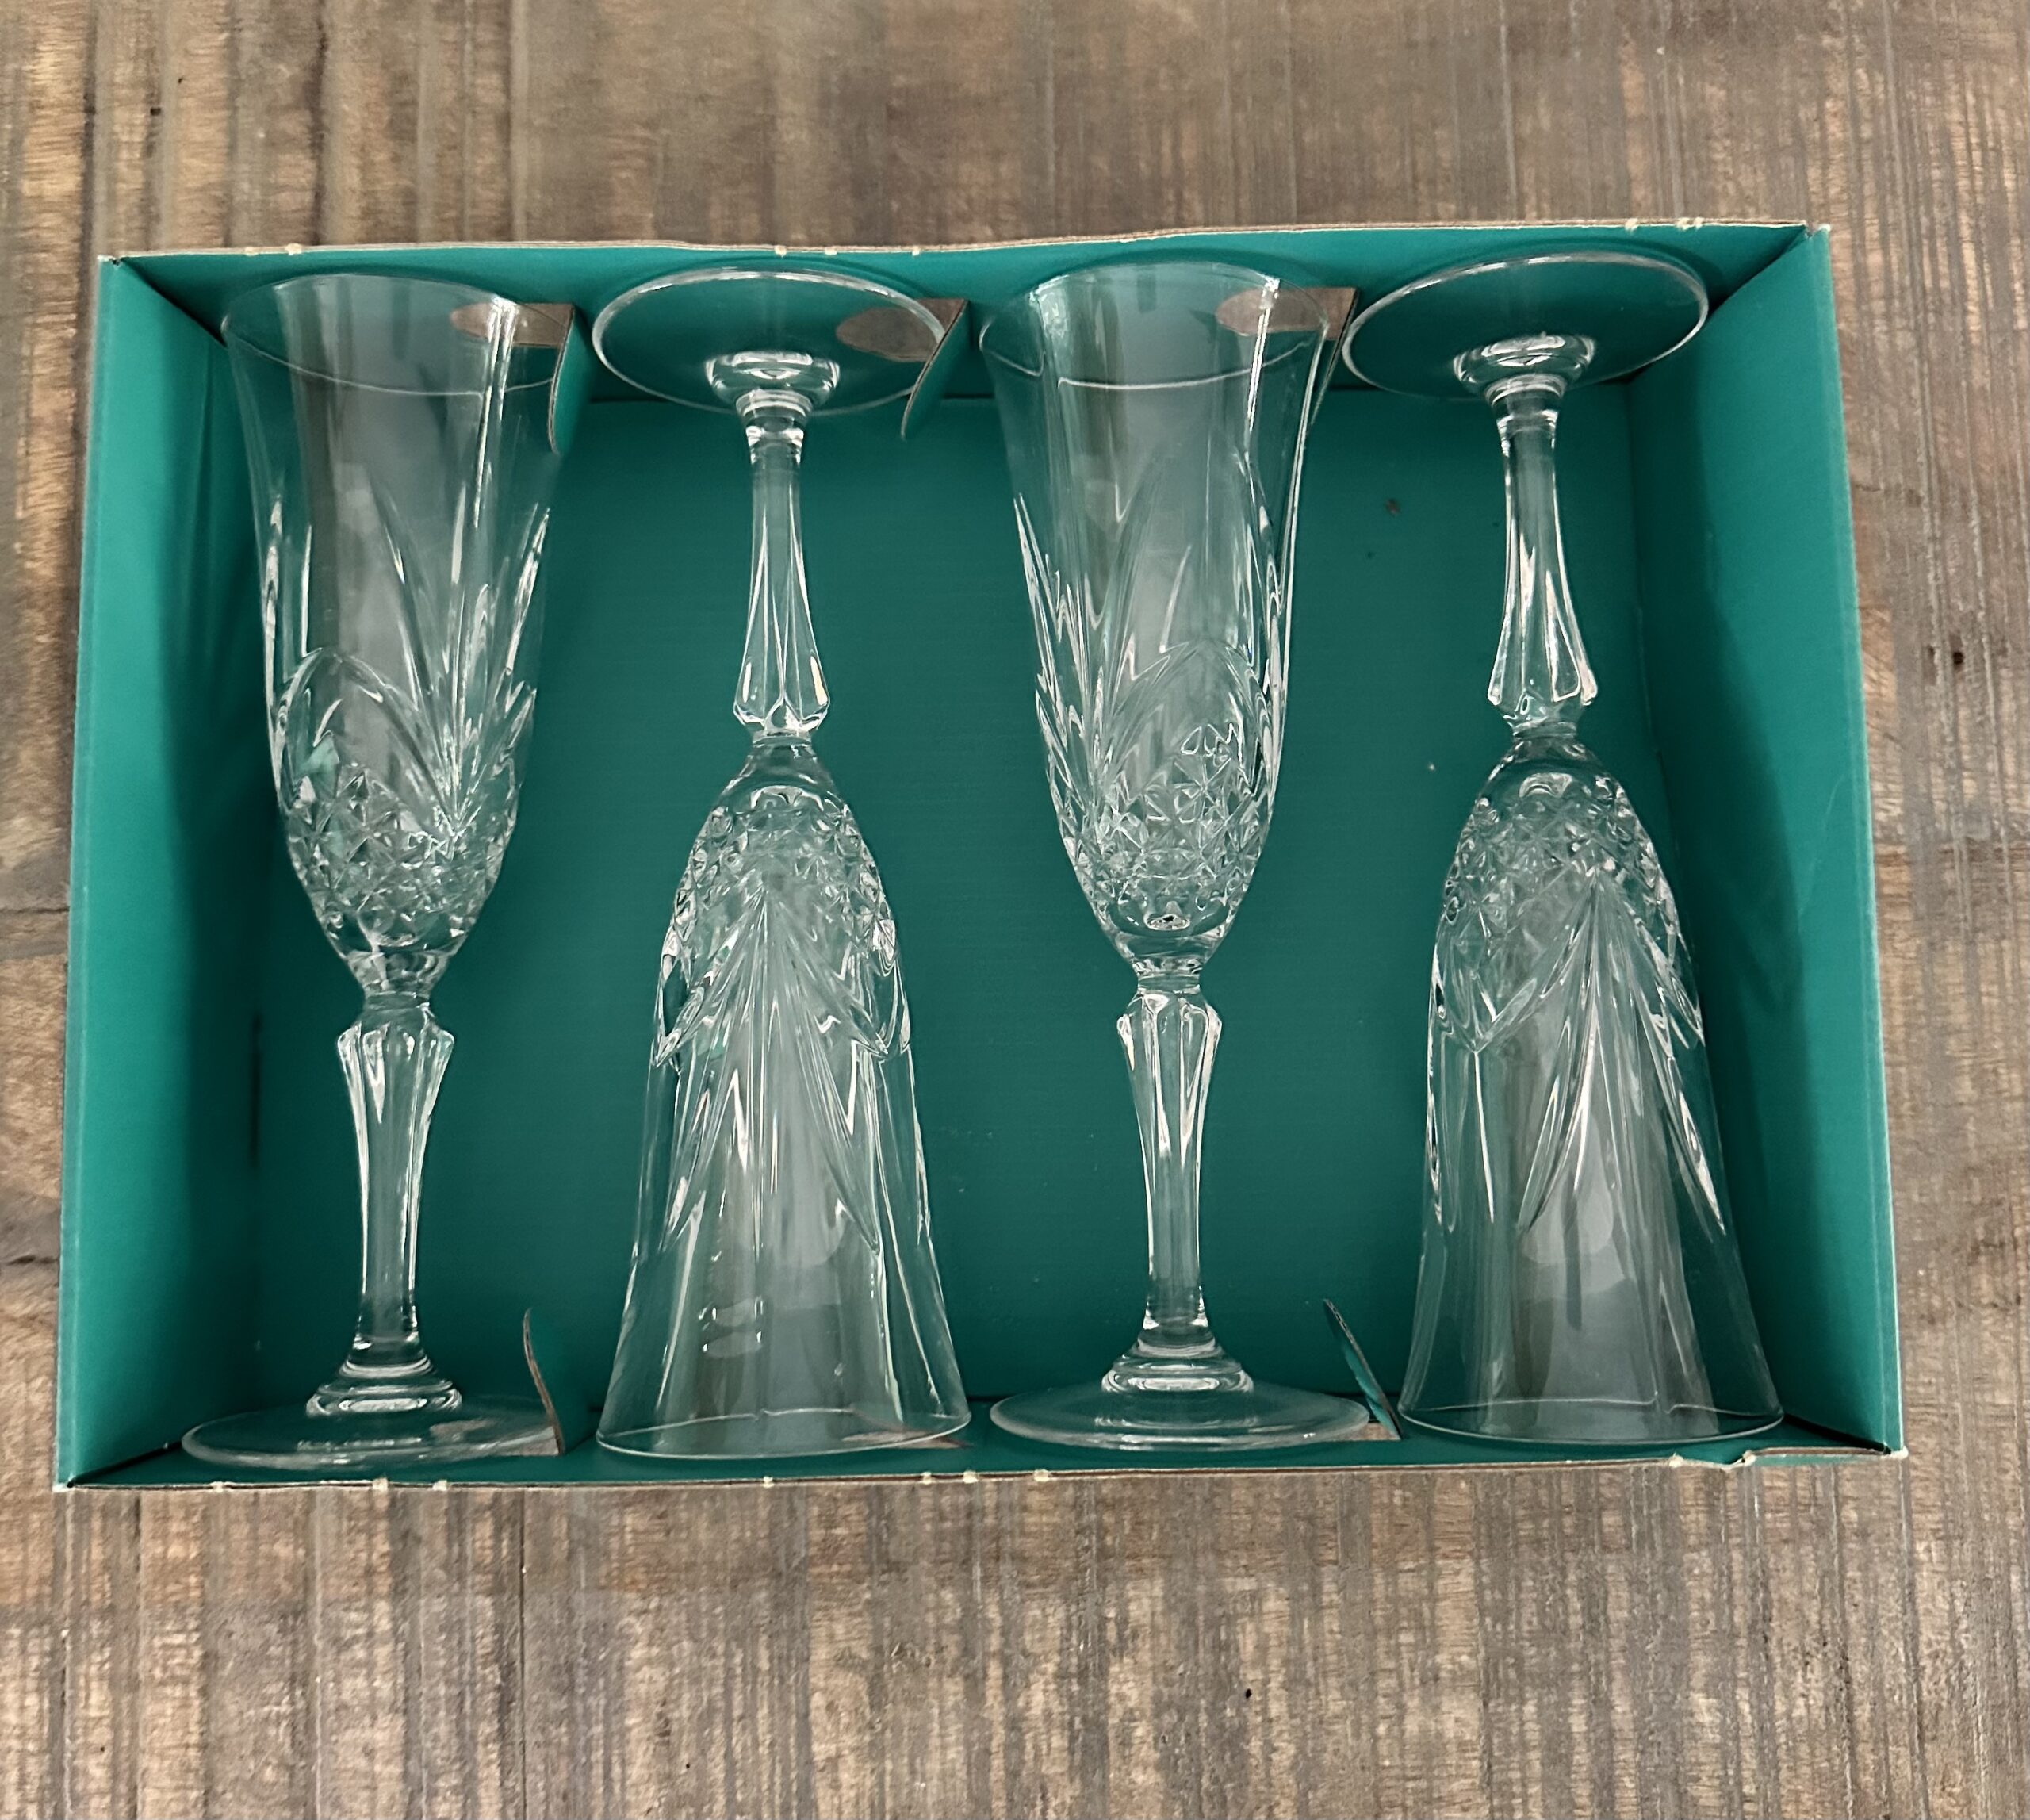 Crystal Champagne Flutes, Set of 8 Cristal De Flandre Crystal Flutes